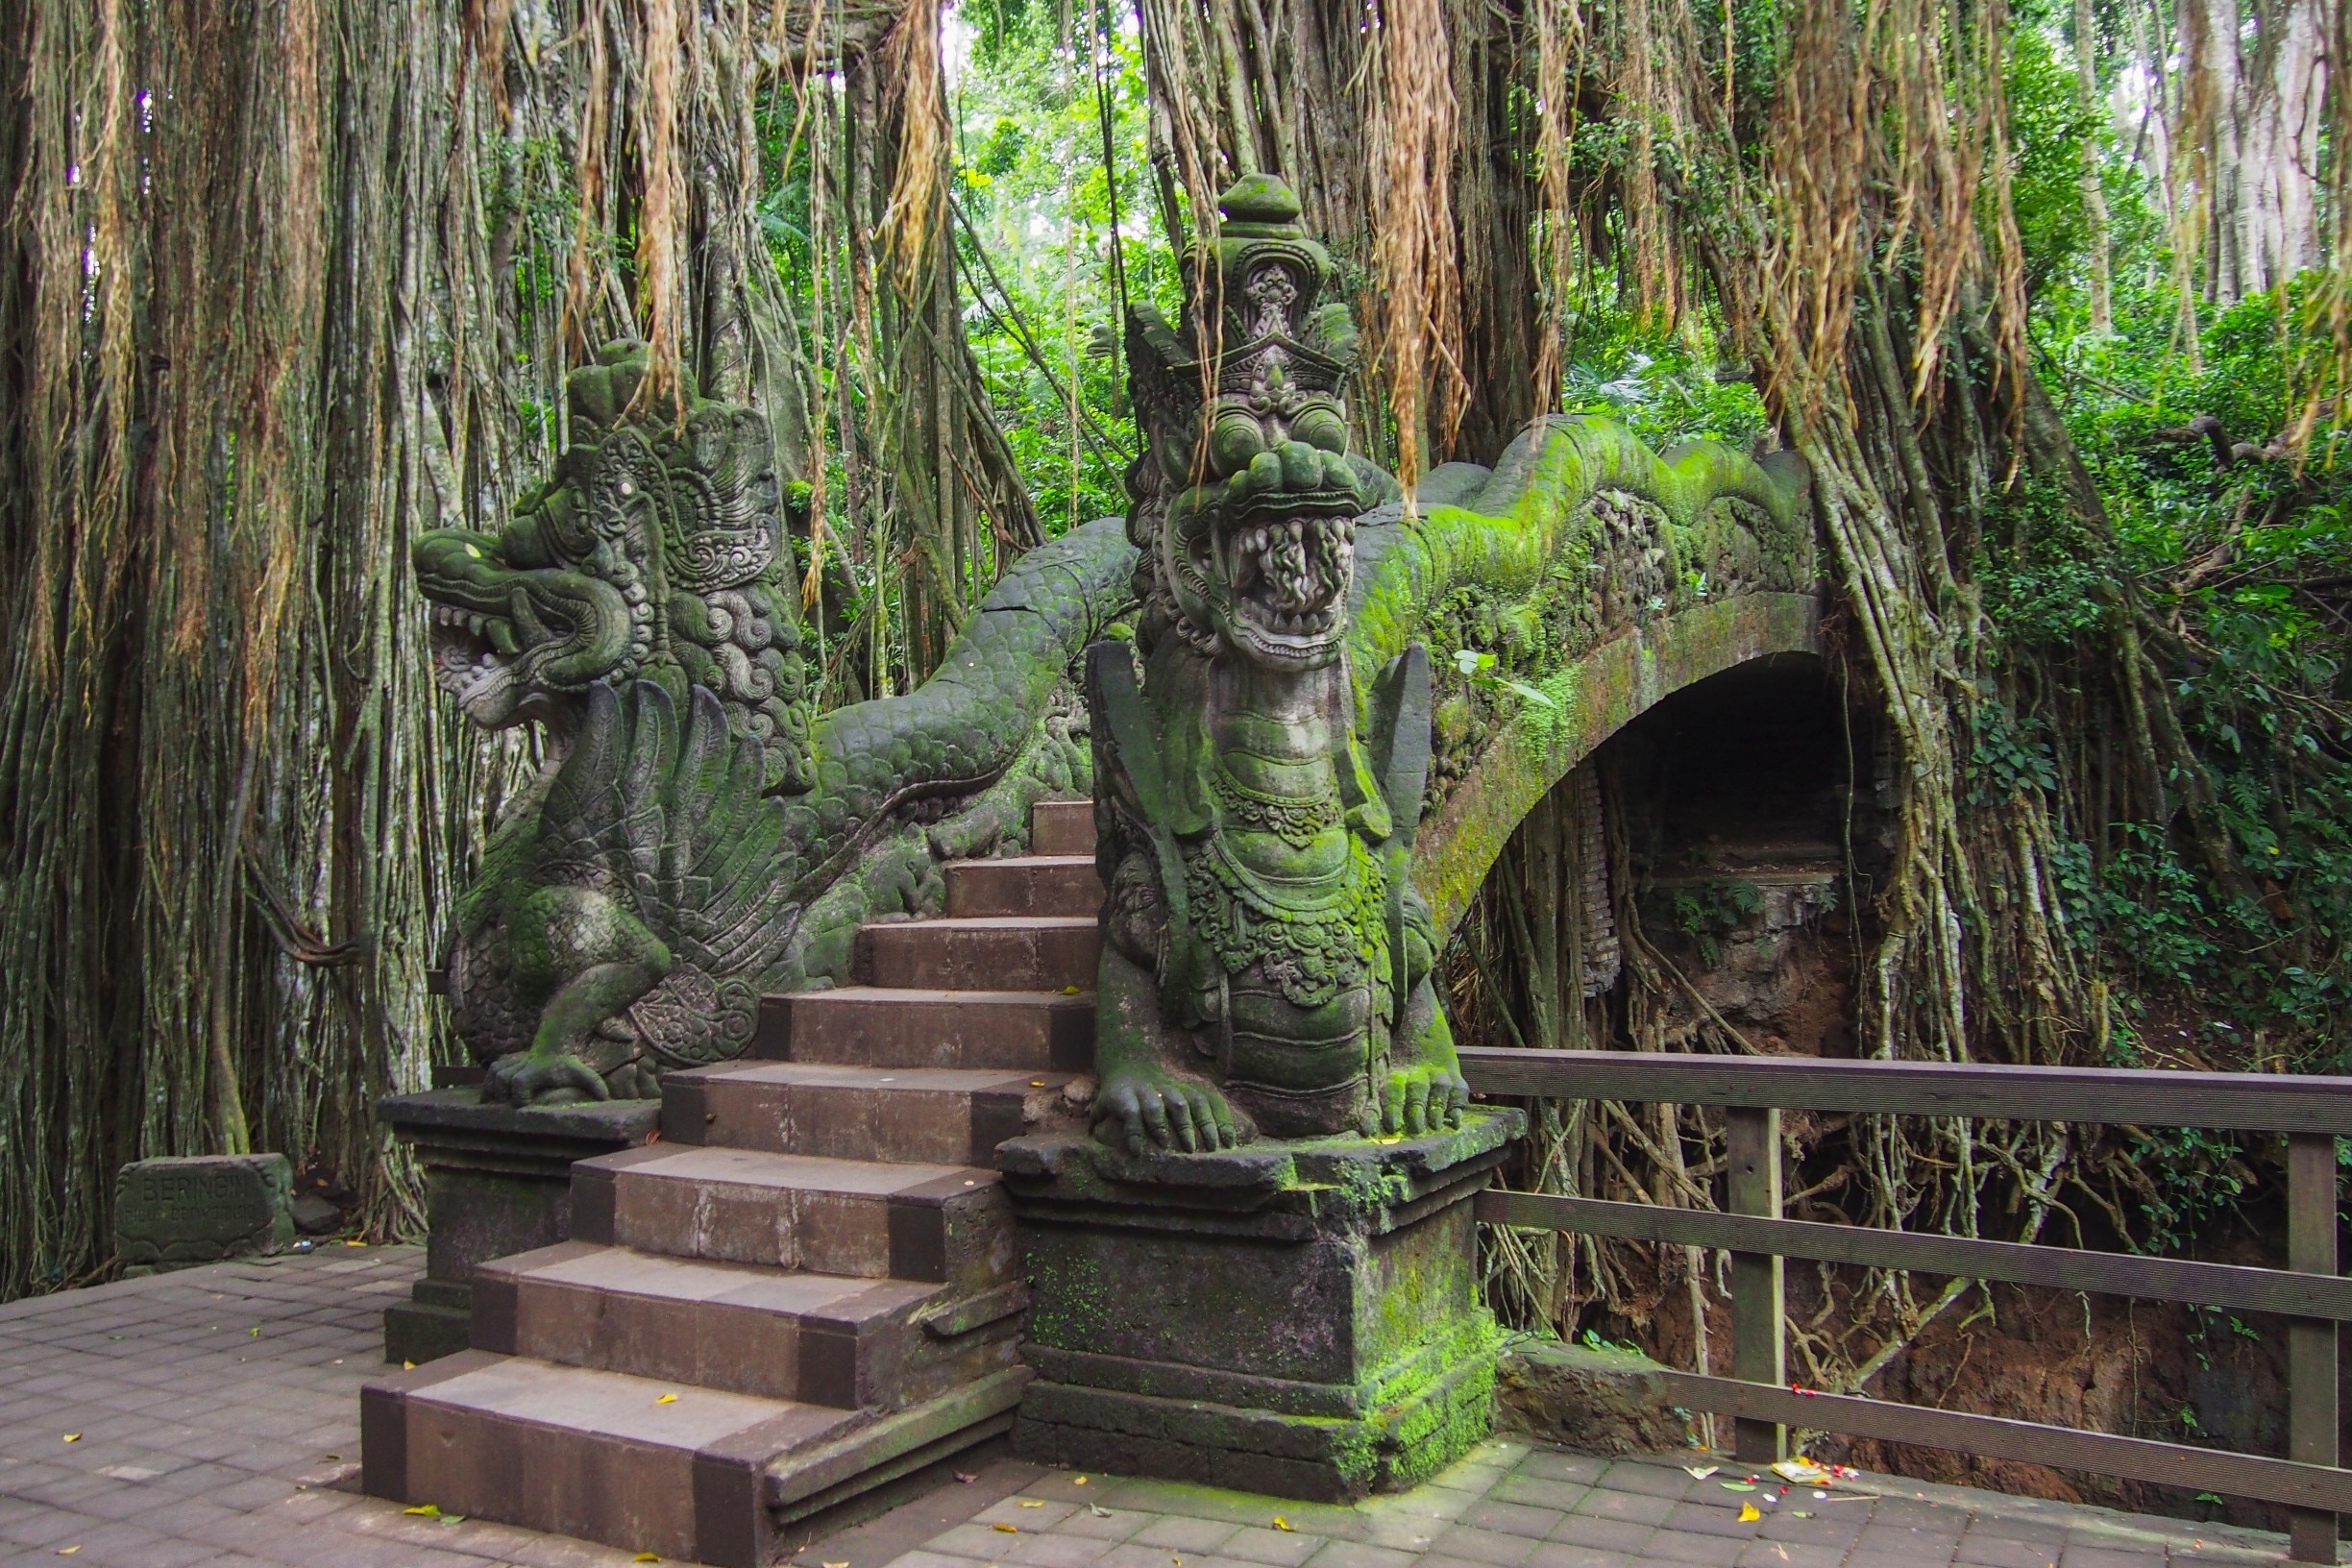 Ubud Monkey Forest, Ubud, Bali, Indonesia